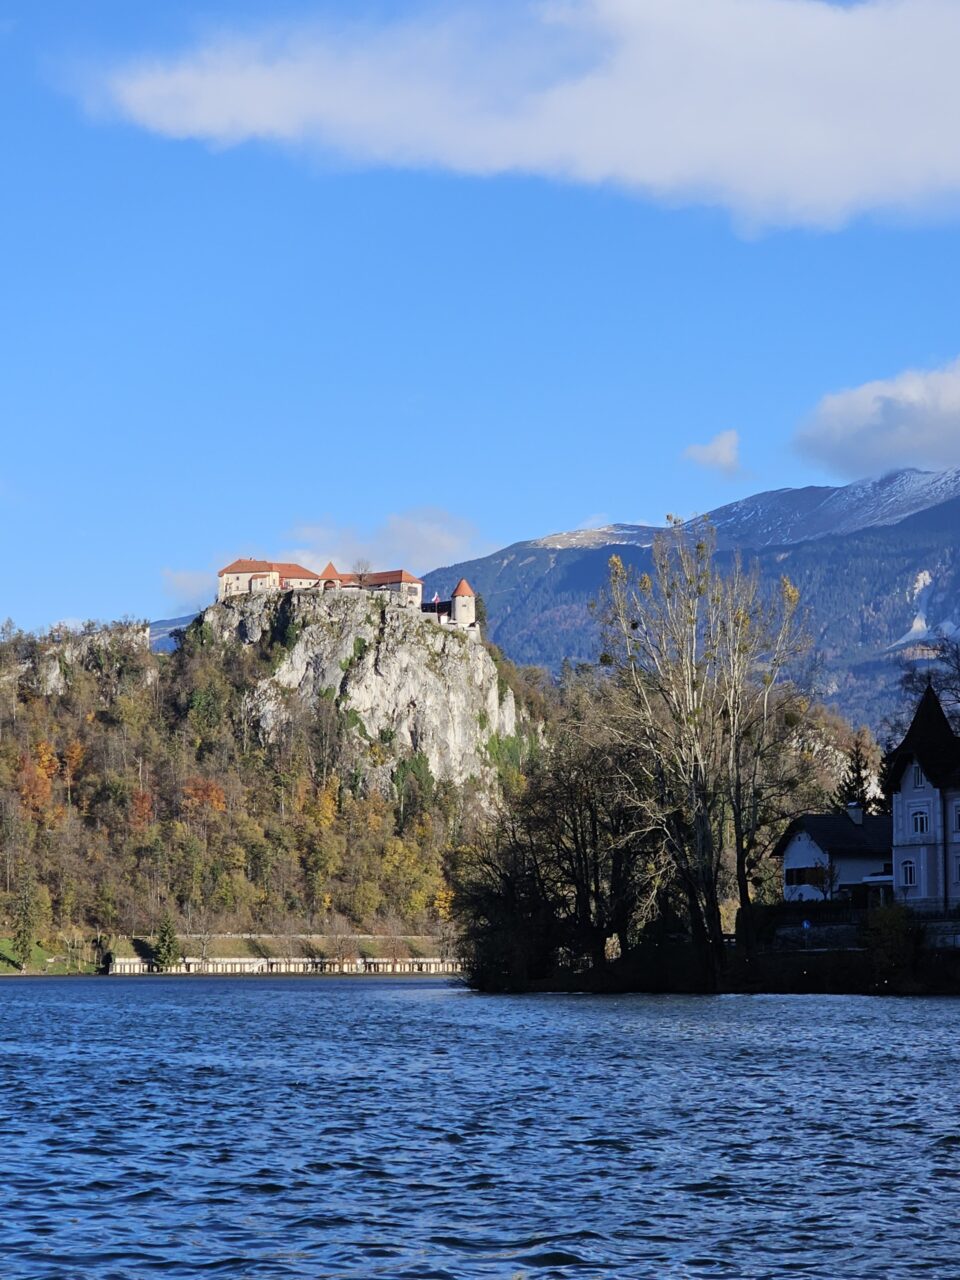 Slott beliggende oppe på en klippe over en innsjø. Foto